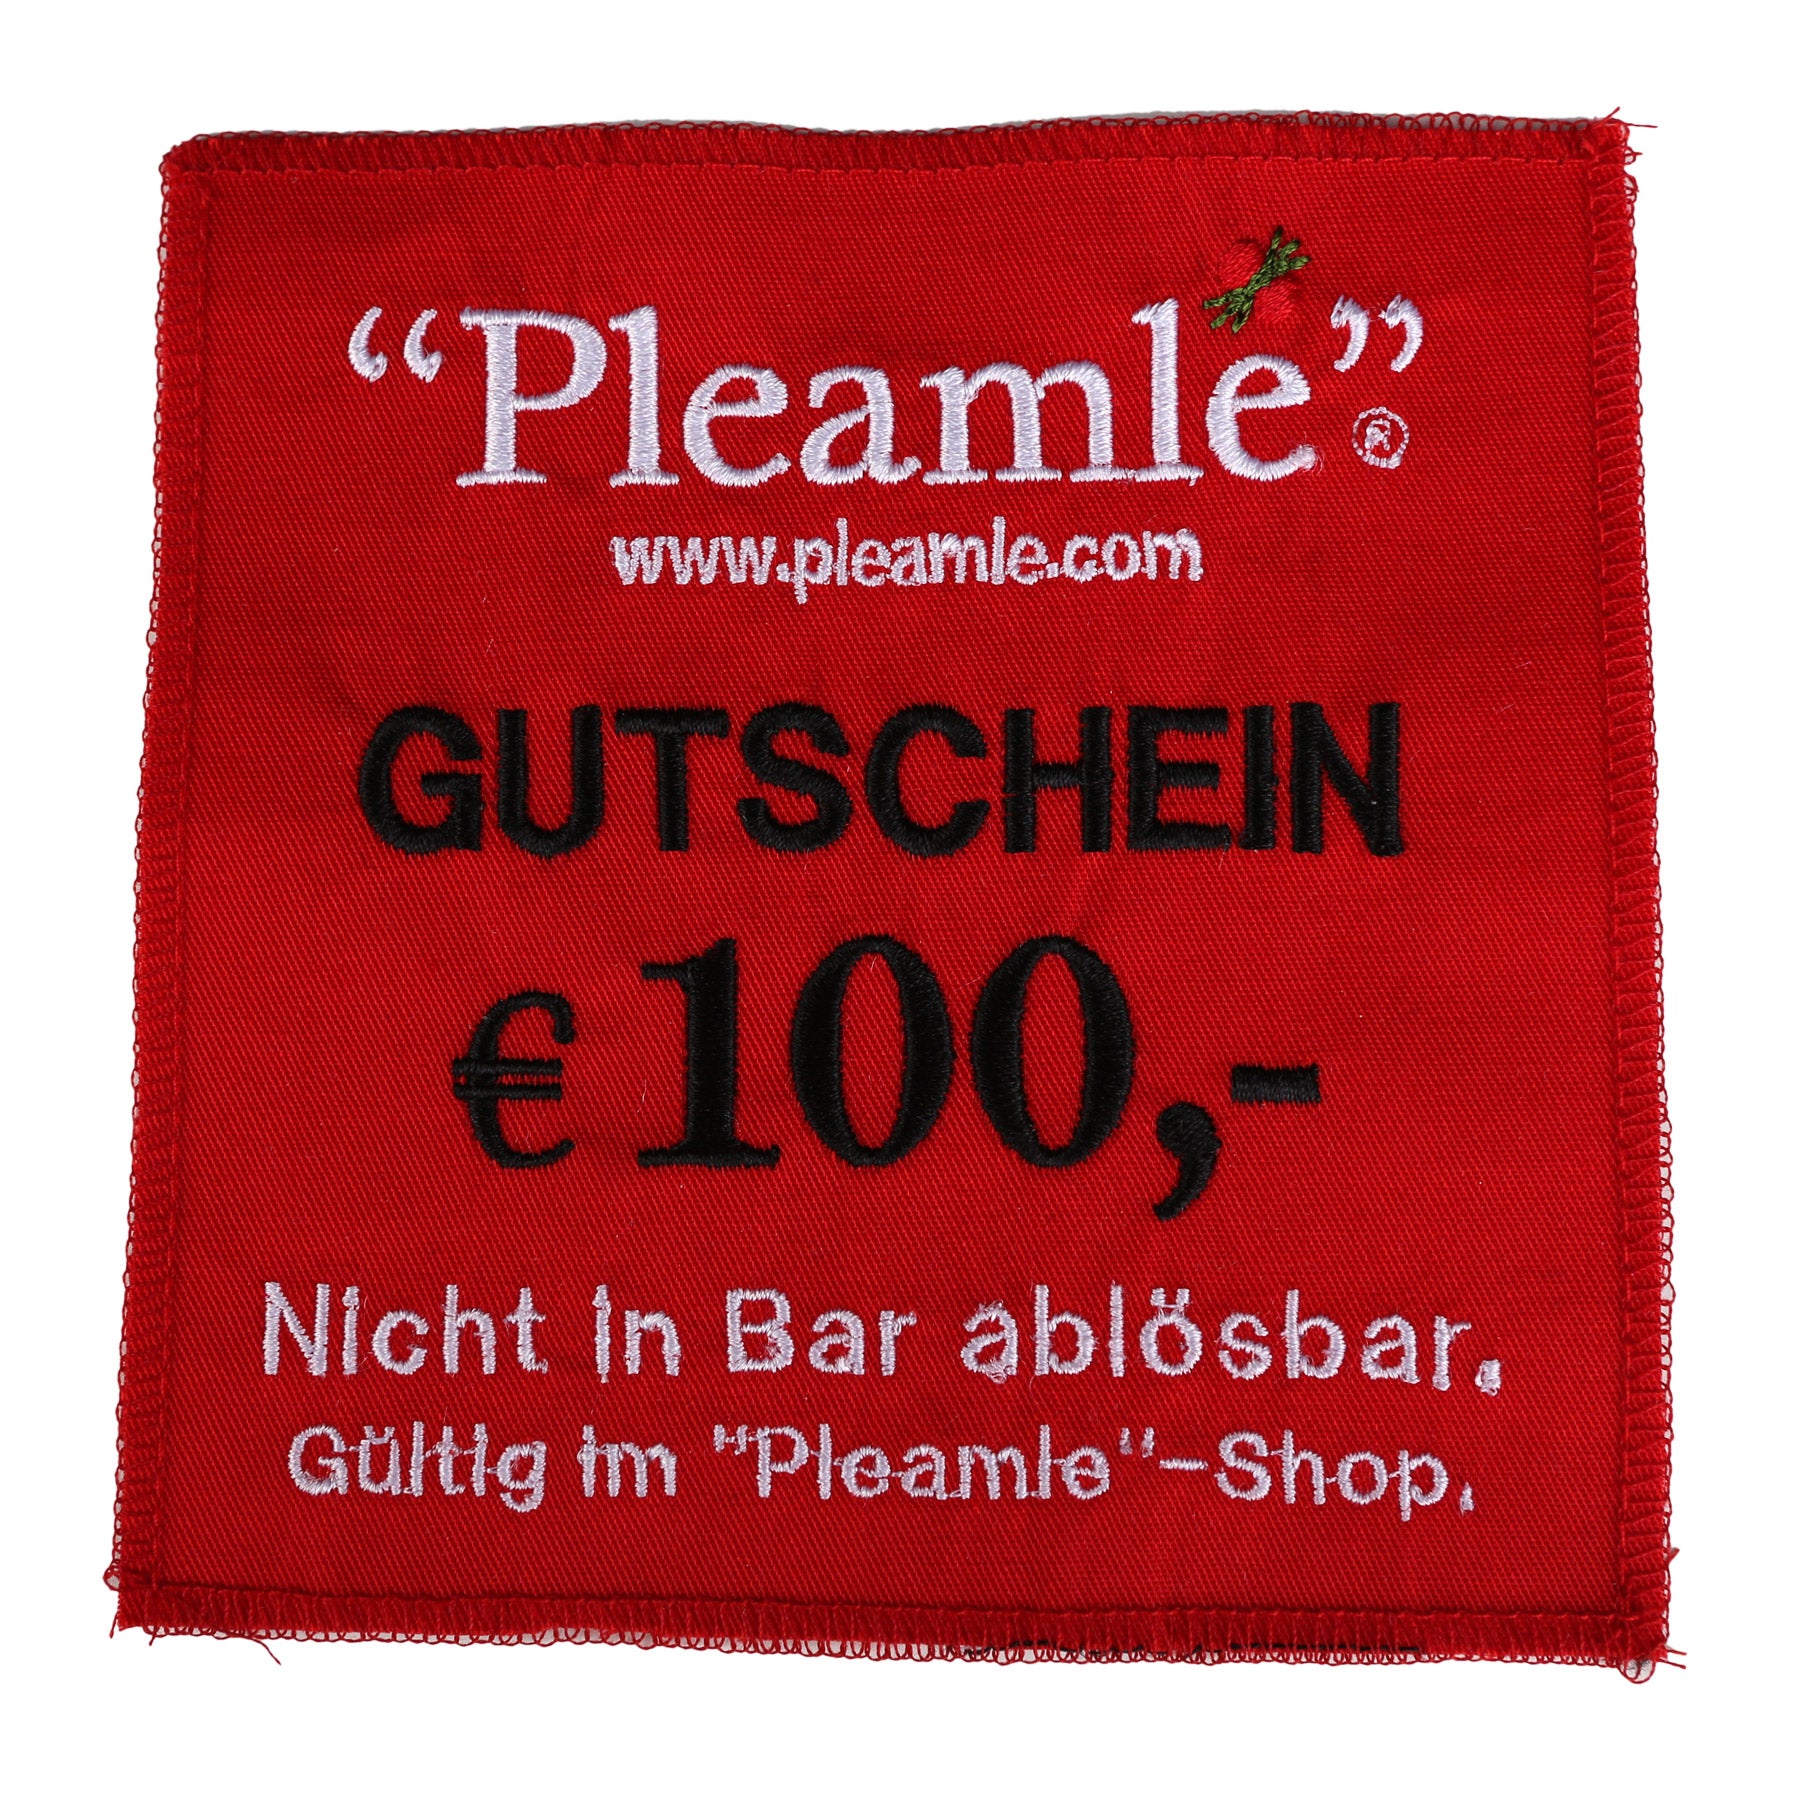 Pleamle Gutschein € 100